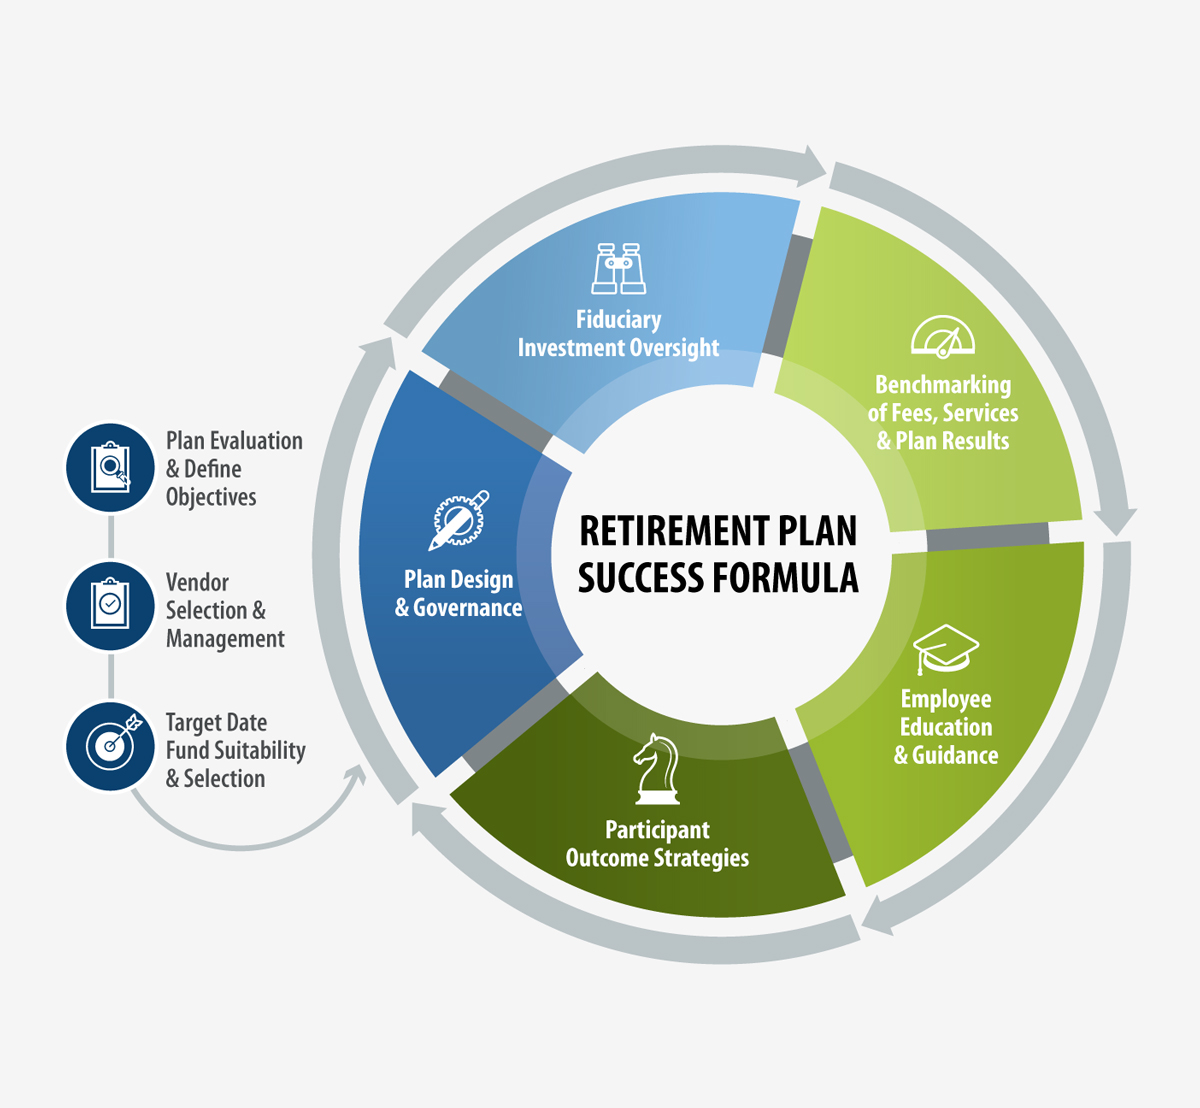 https://titanwealthadvisors.com/wp-content/uploads/2021/01/Retirement-Plan-infographic.jpg